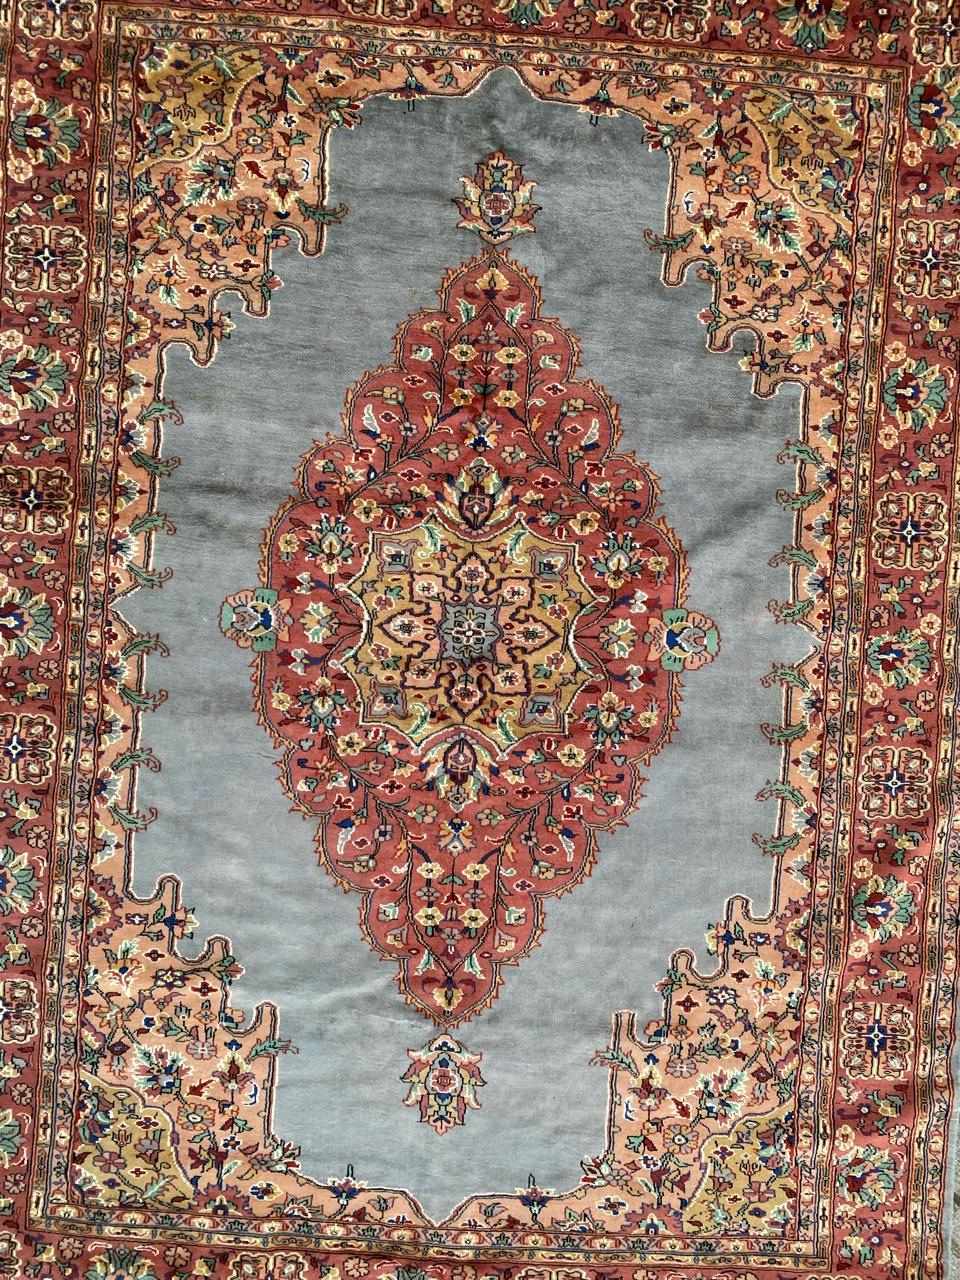 Schöner Teppich aus der Mitte des Jahrhunderts mit schönem geometrischem Muster und schönen Farben, komplett handgeknüpft mit Wolle und Seidensamt auf Baumwollbasis.

✨✨✨
